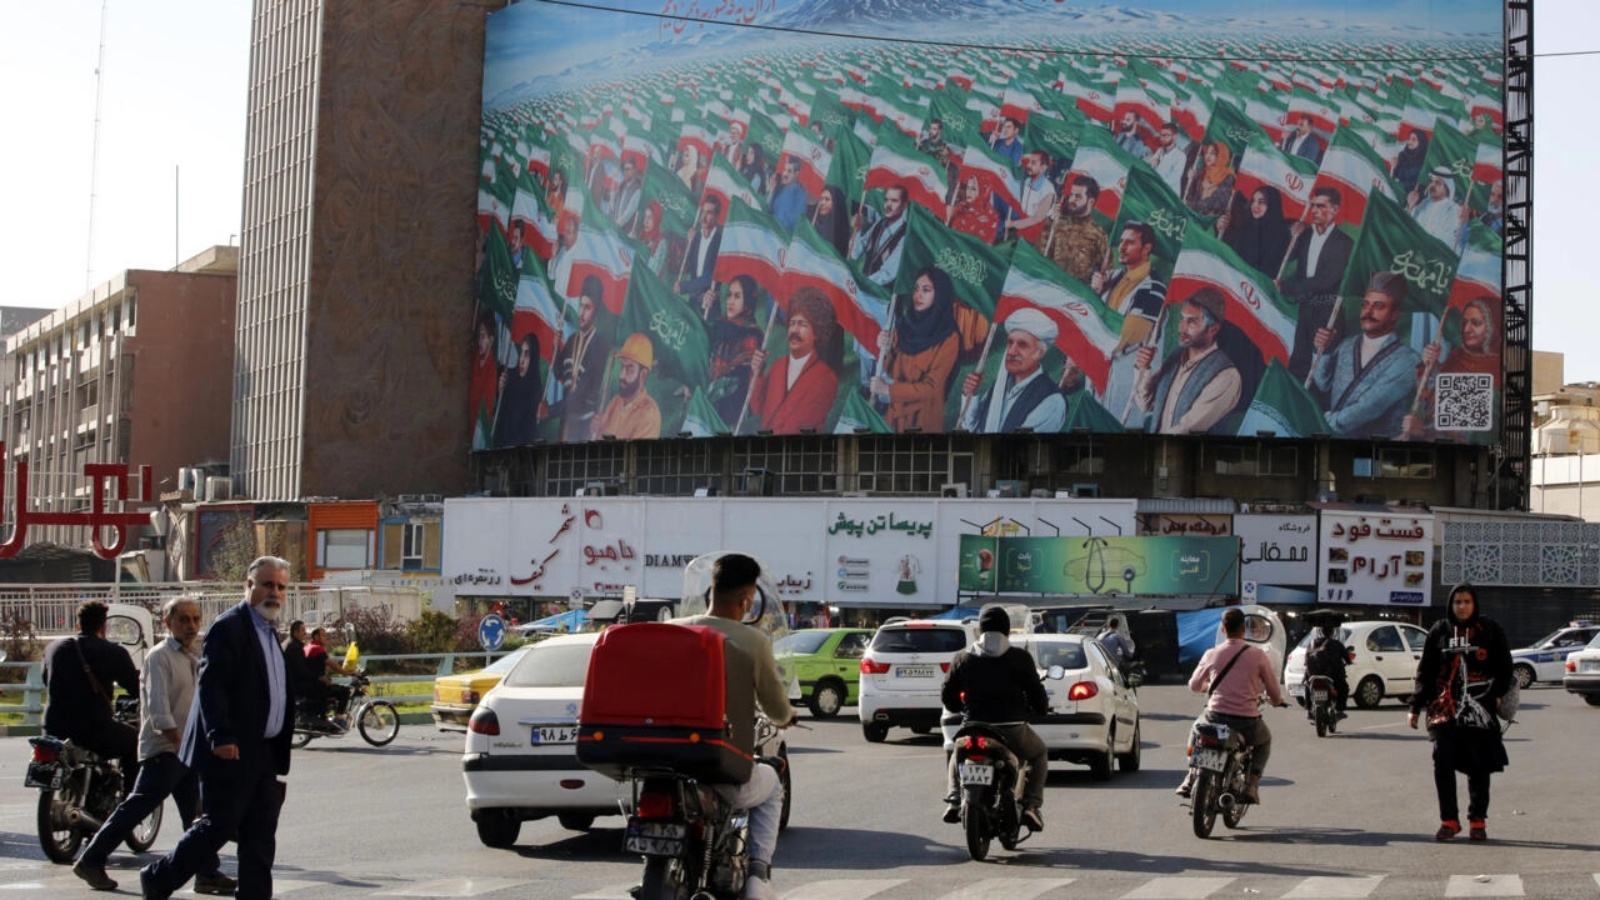 أشخاص يسيرون عبر معبر للمشاة في ساحة وليعصر وسط العاصمة الإيرانية طهران في 25 أكتوبر 2022 